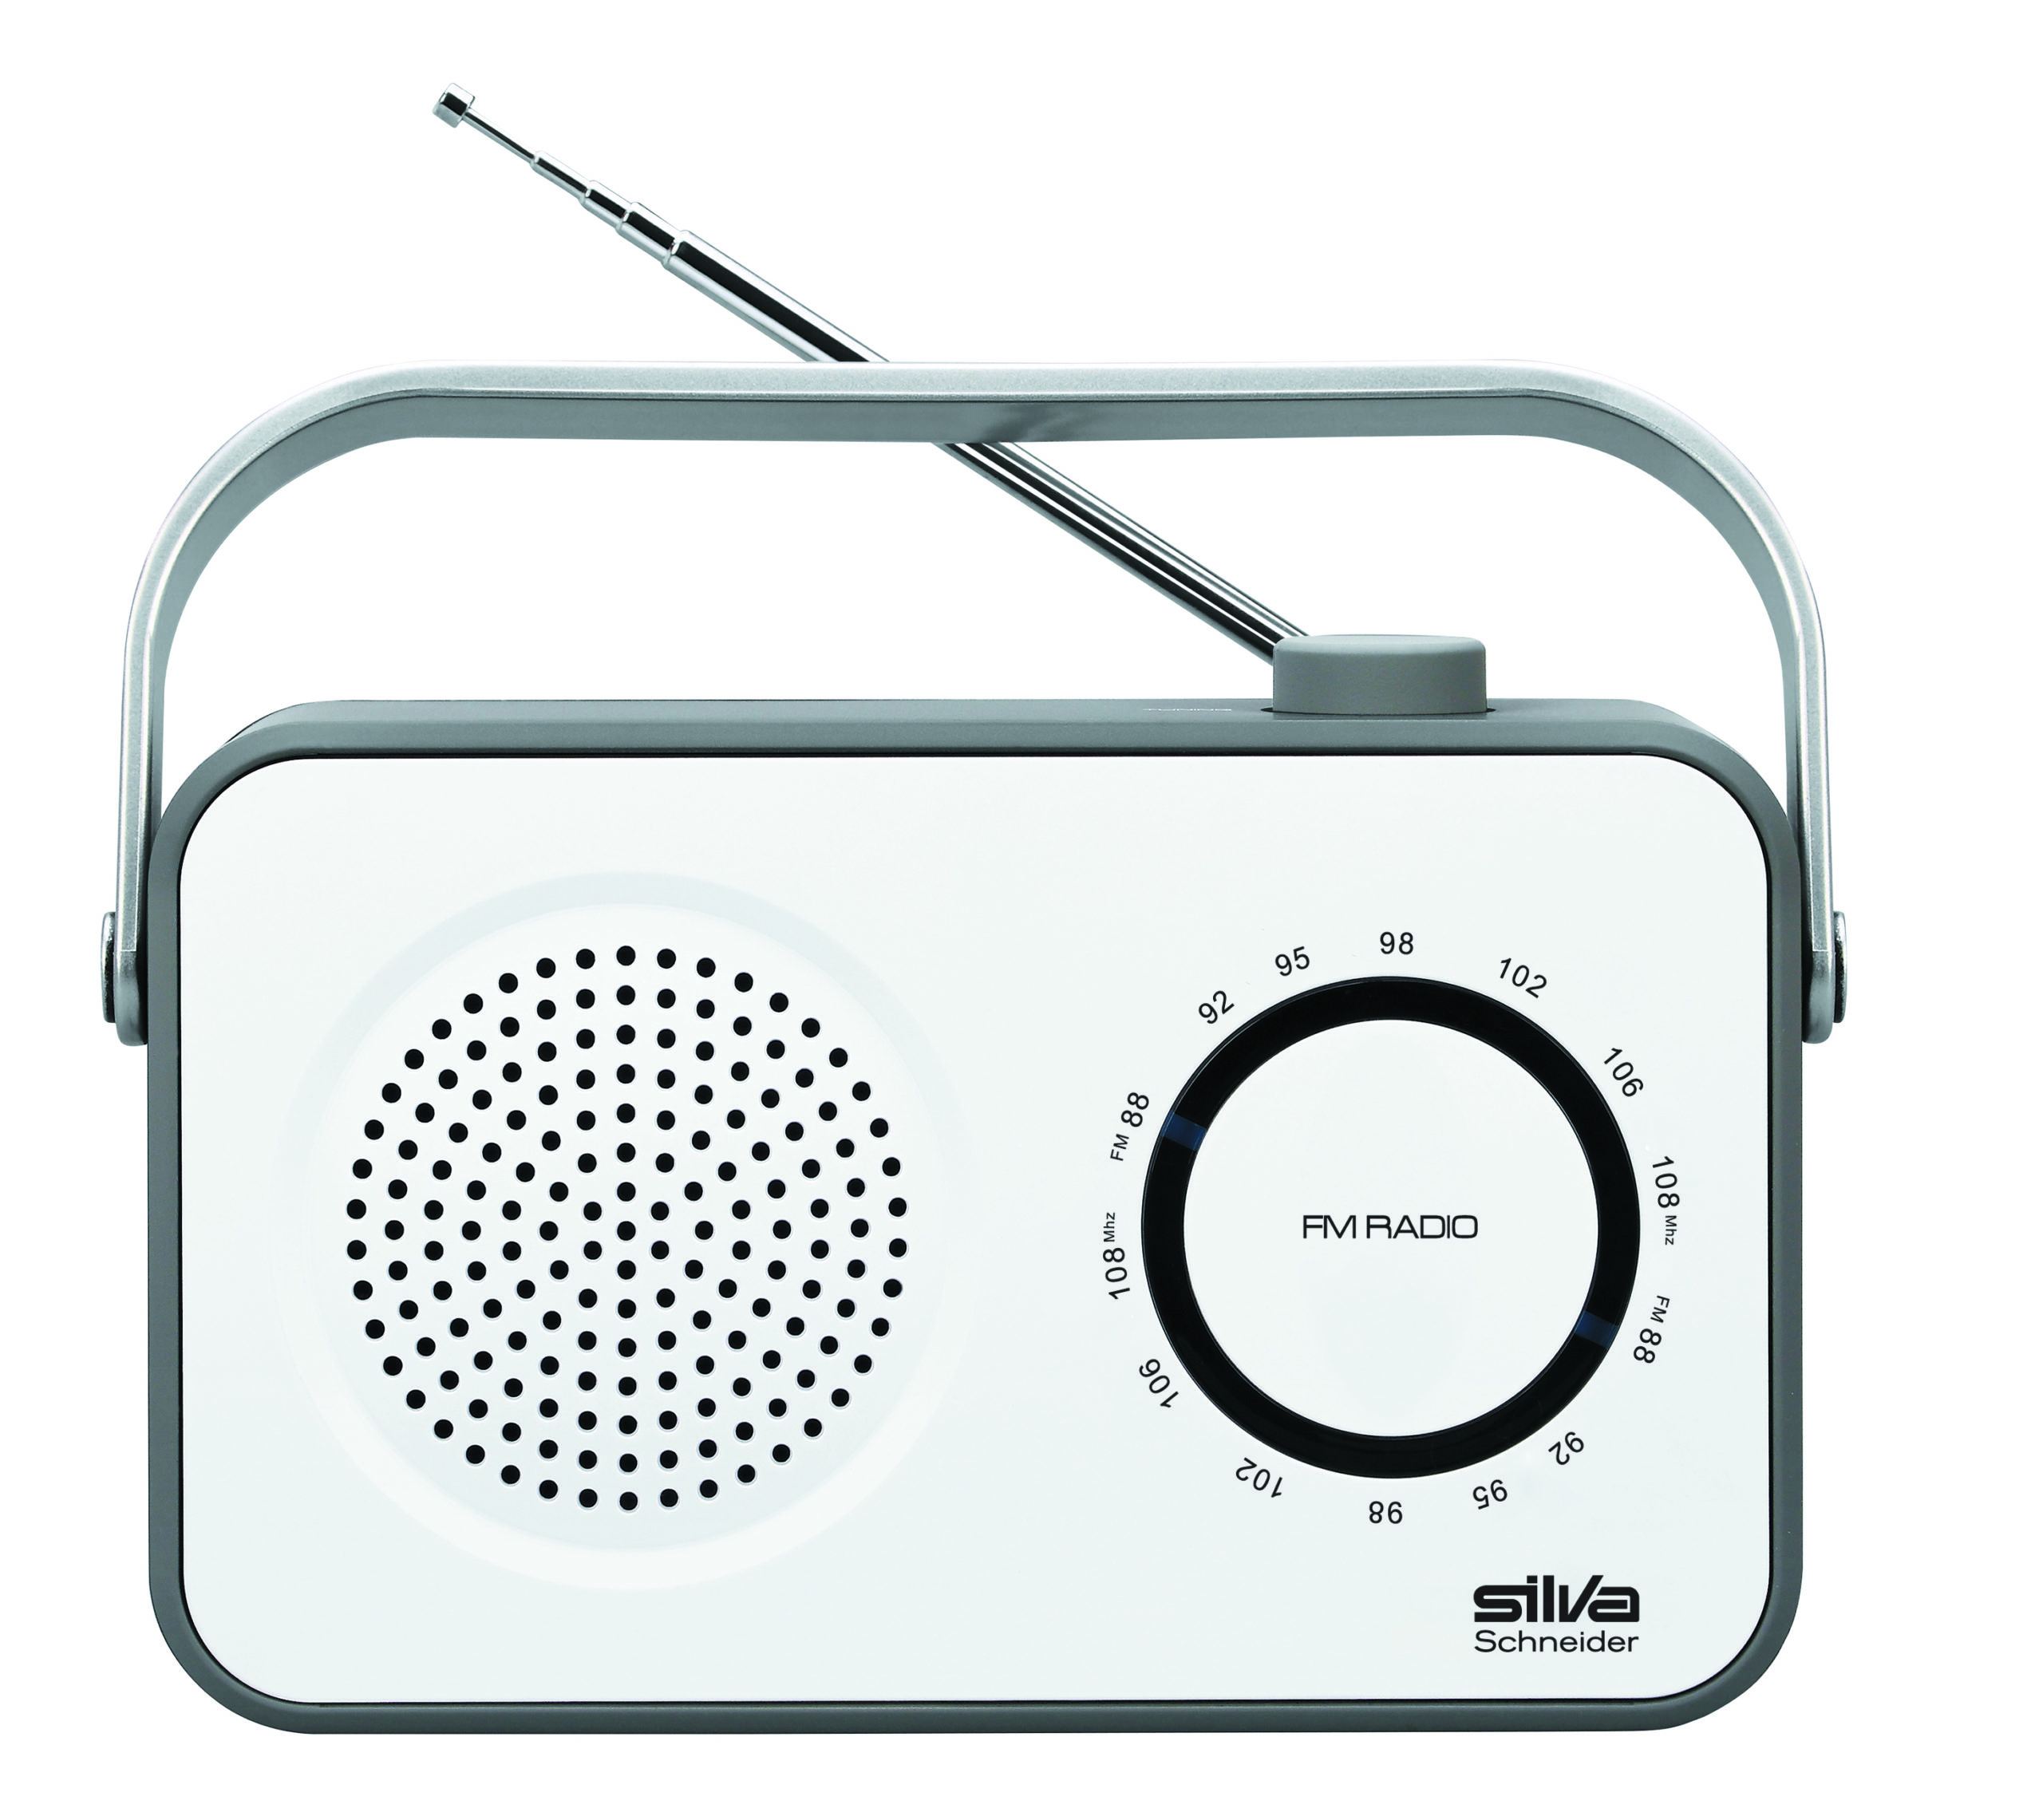 SILVA-SCHNEIDER M 295 Radio, weiß/grau FM